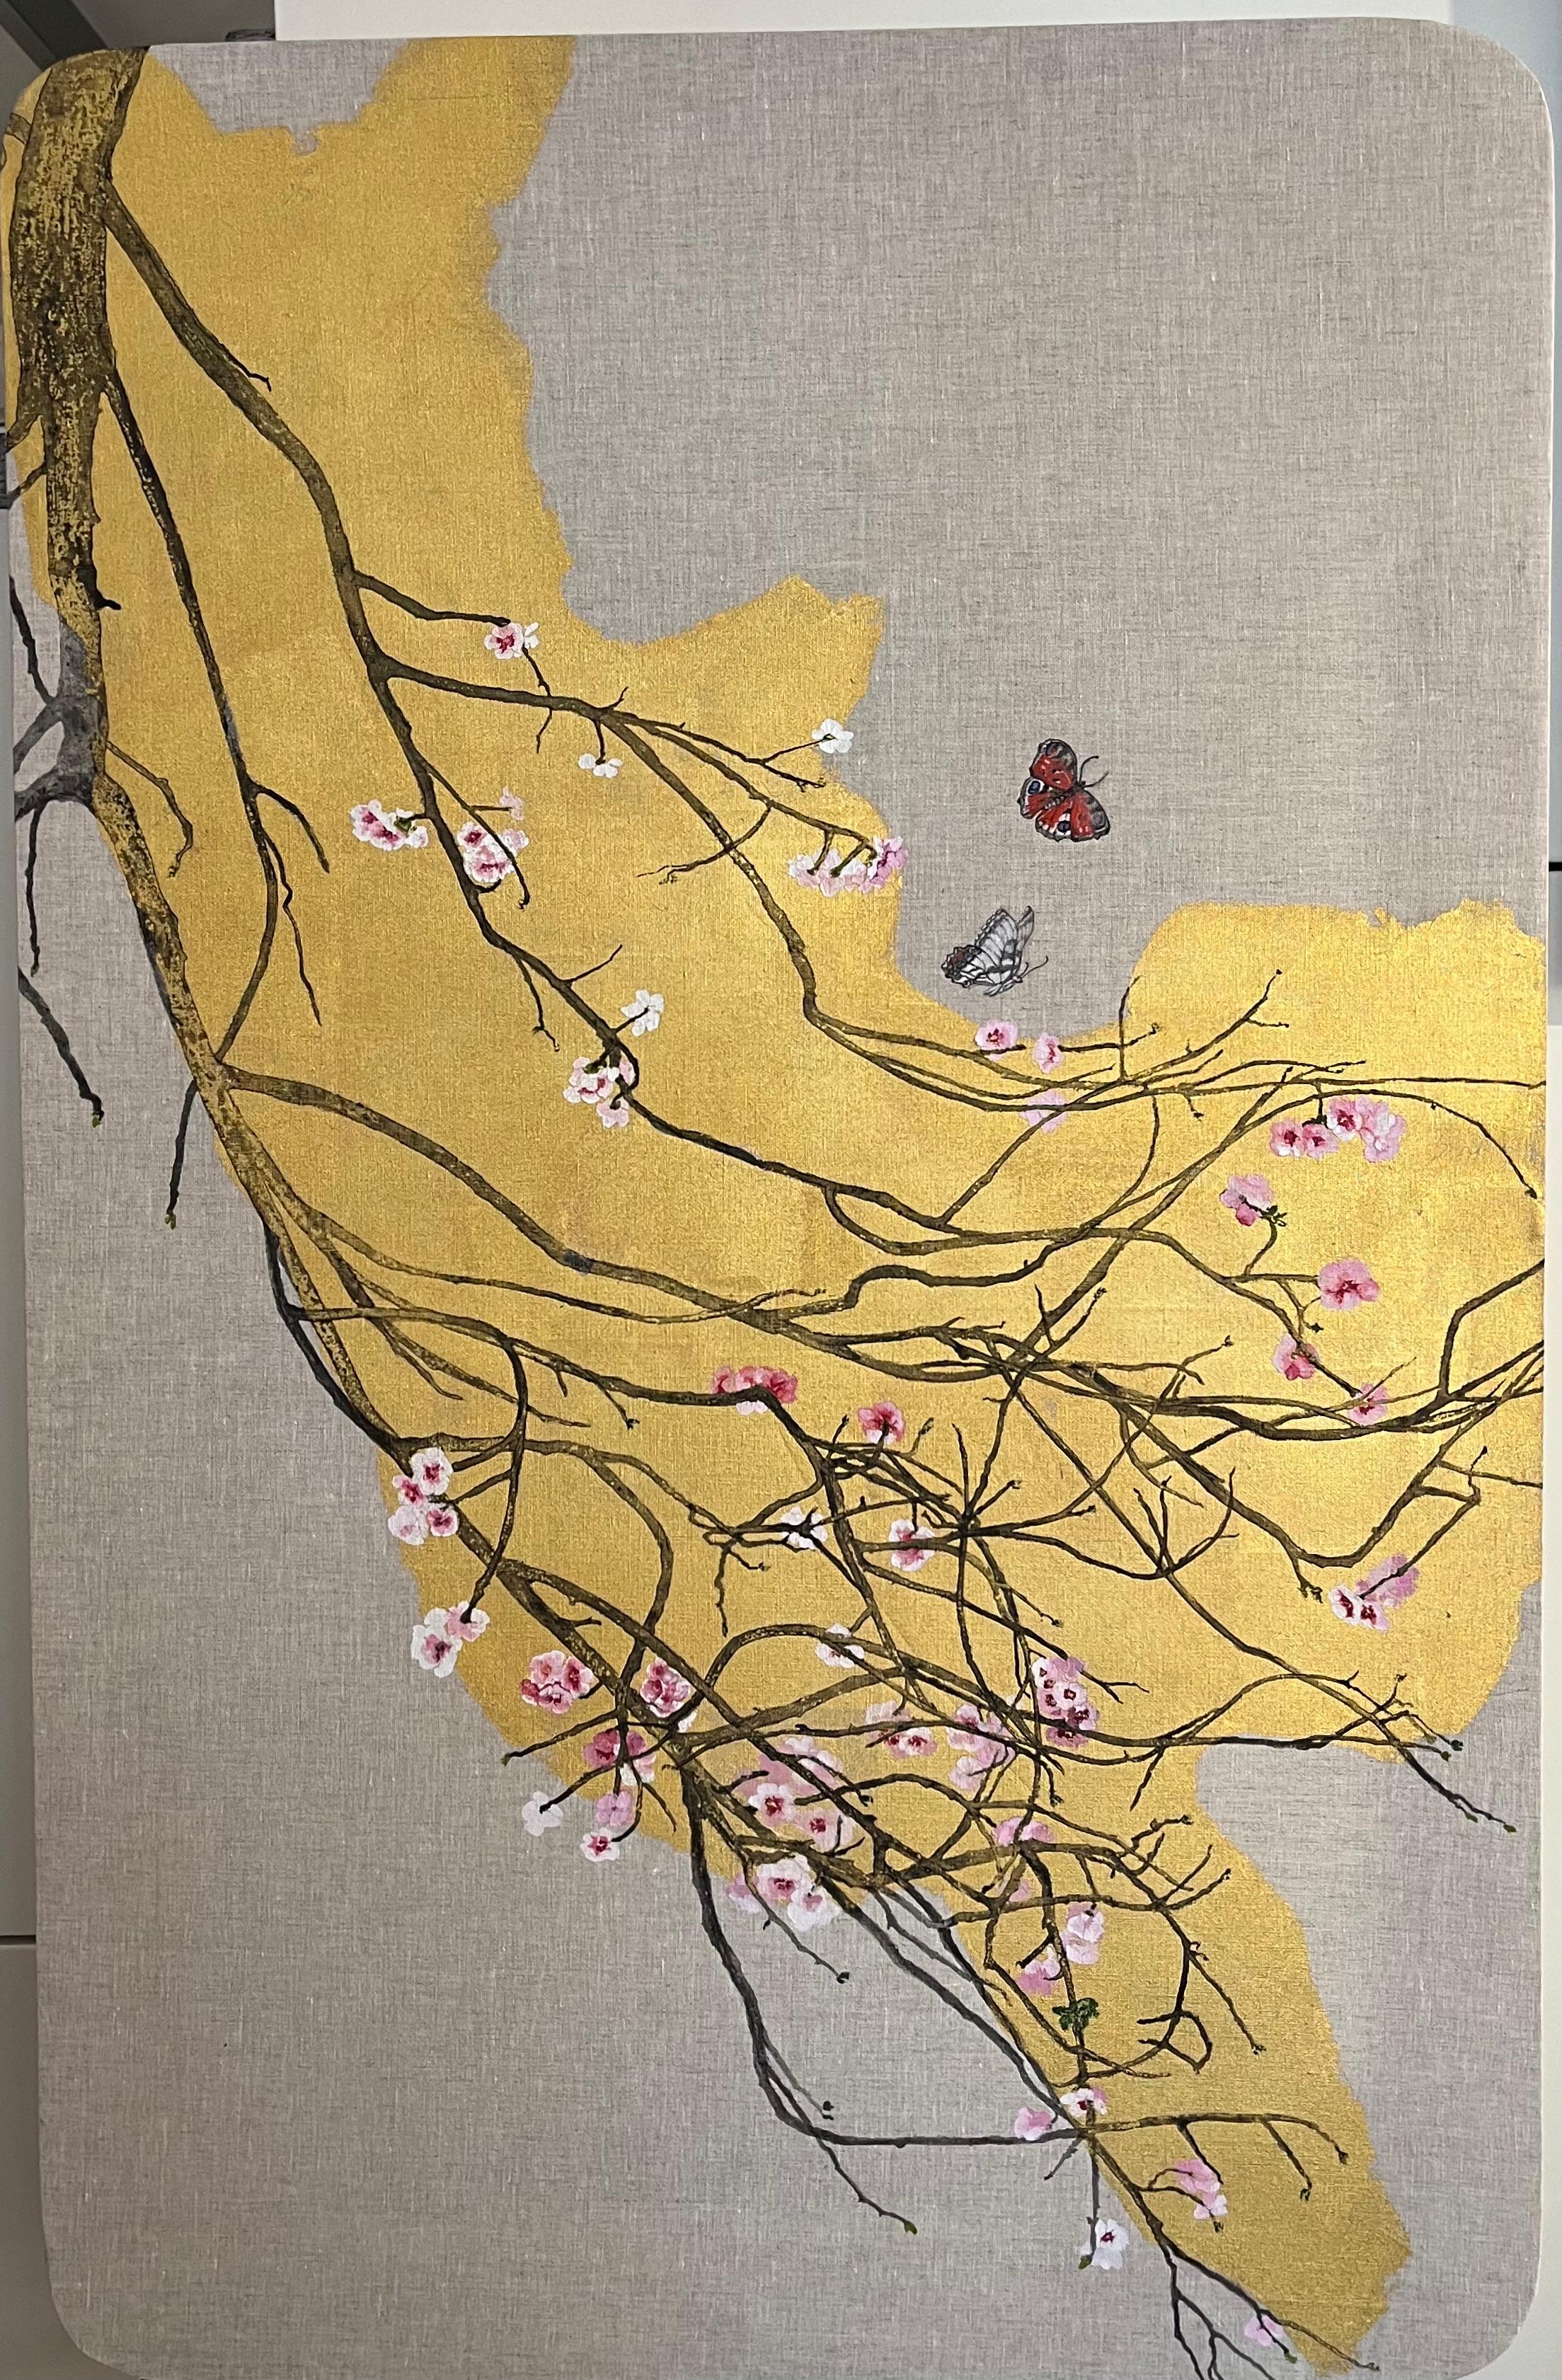 Pfirsichfarbene Blüte, Rosa und Schmetterlinge, auf altem Gemälde im Vordergrund. Innovativ